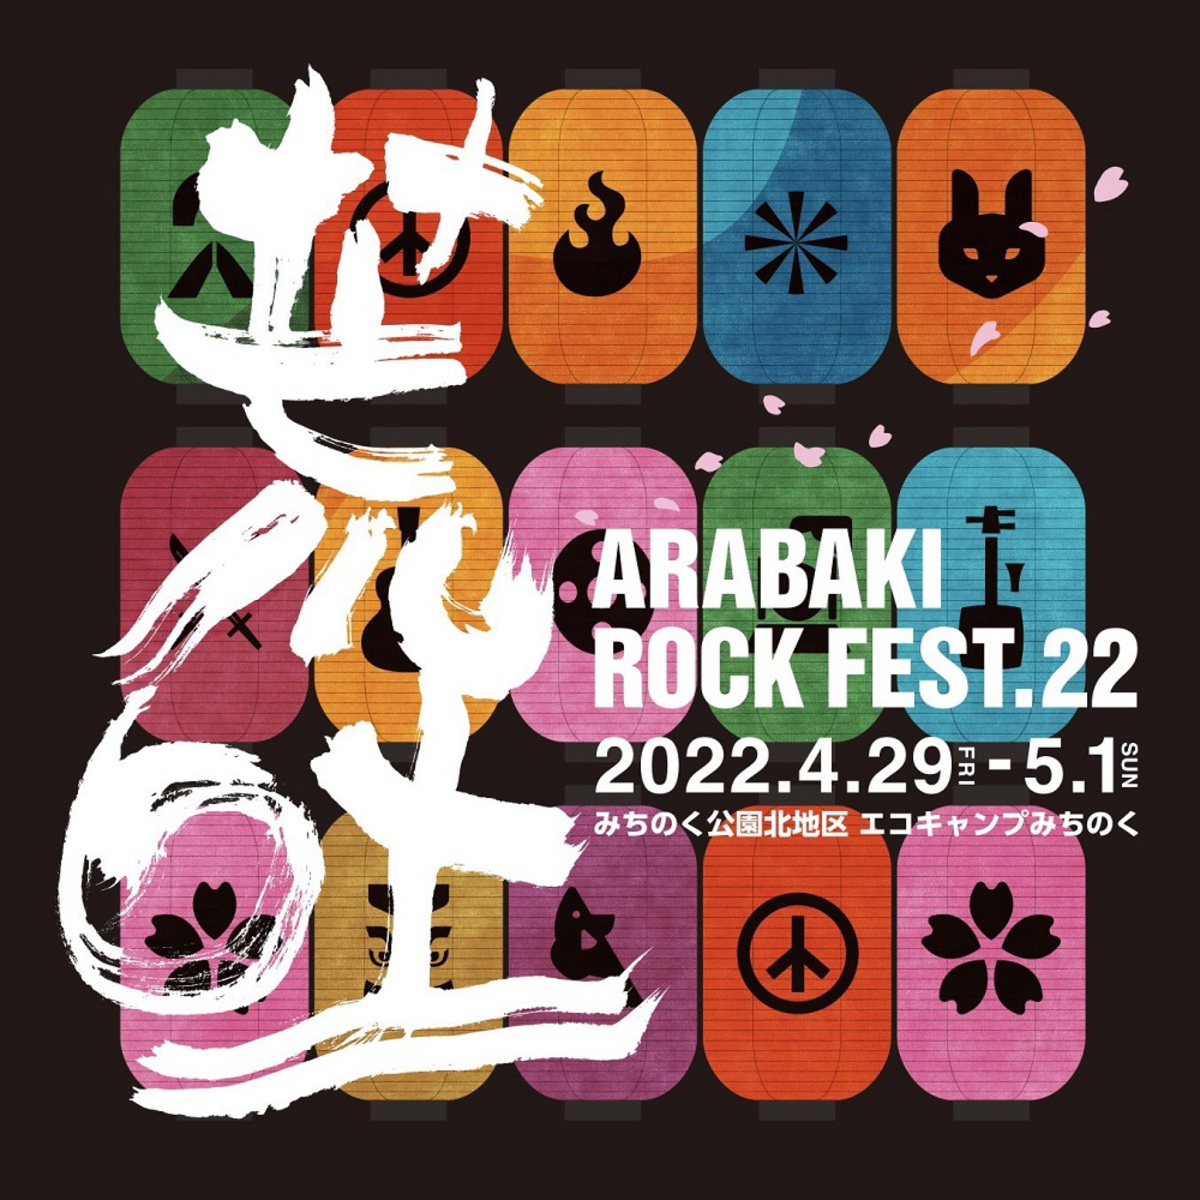 ARABAKIARABAKI ROCK FEST.23 チケット 2日間通し券 リストバンド